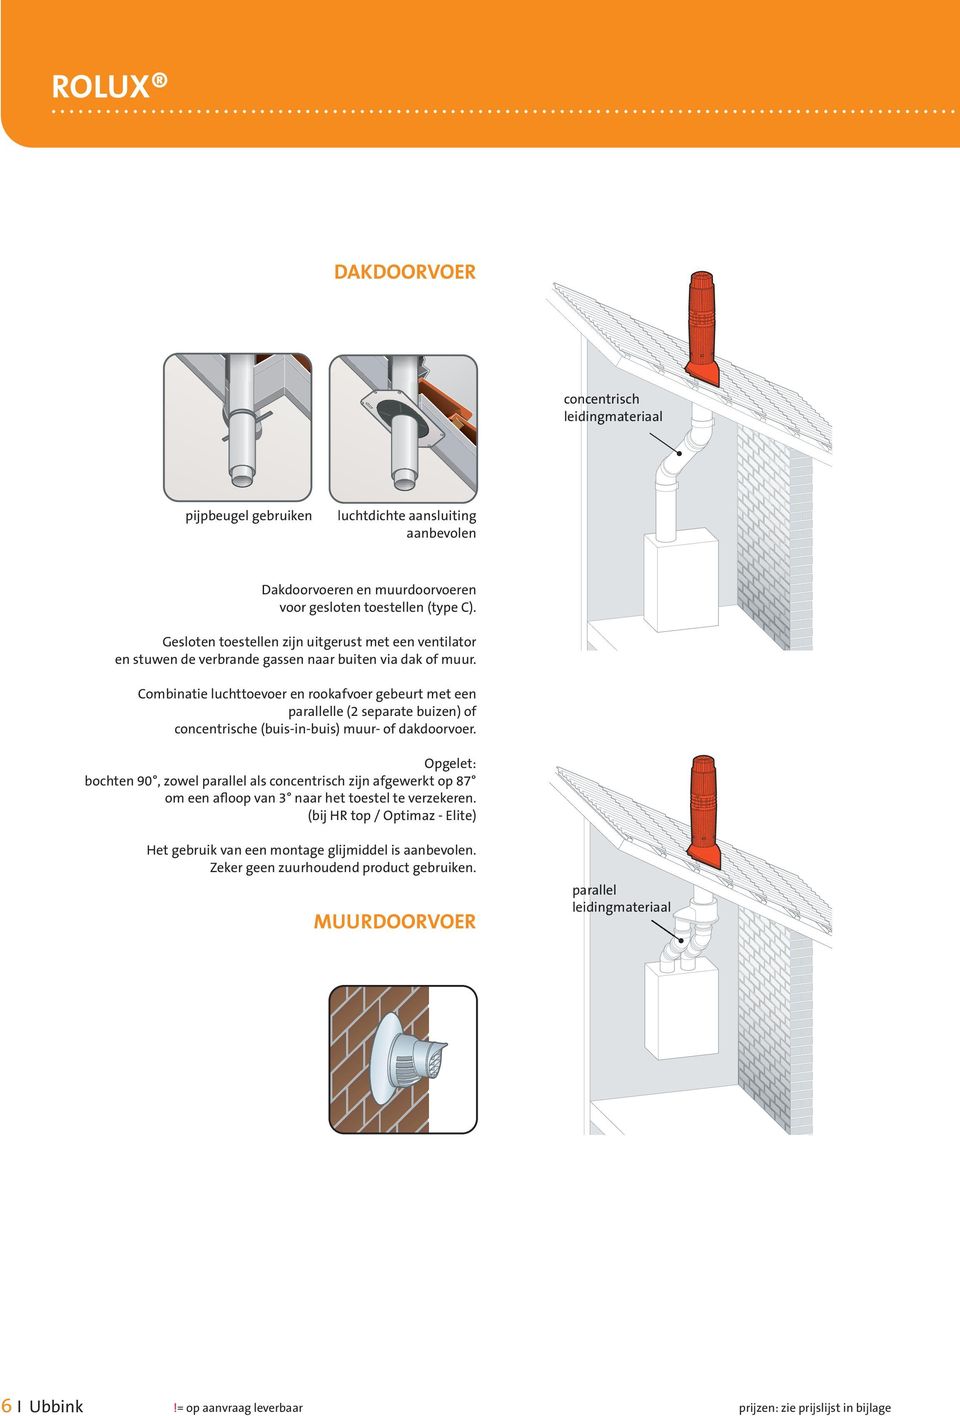 ombinatie luchttoevoer en rookafvoer gebeurt met een parallelle (2 separate buizen) of concentrische (buis-in-buis) muur- of dakdoorvoer.